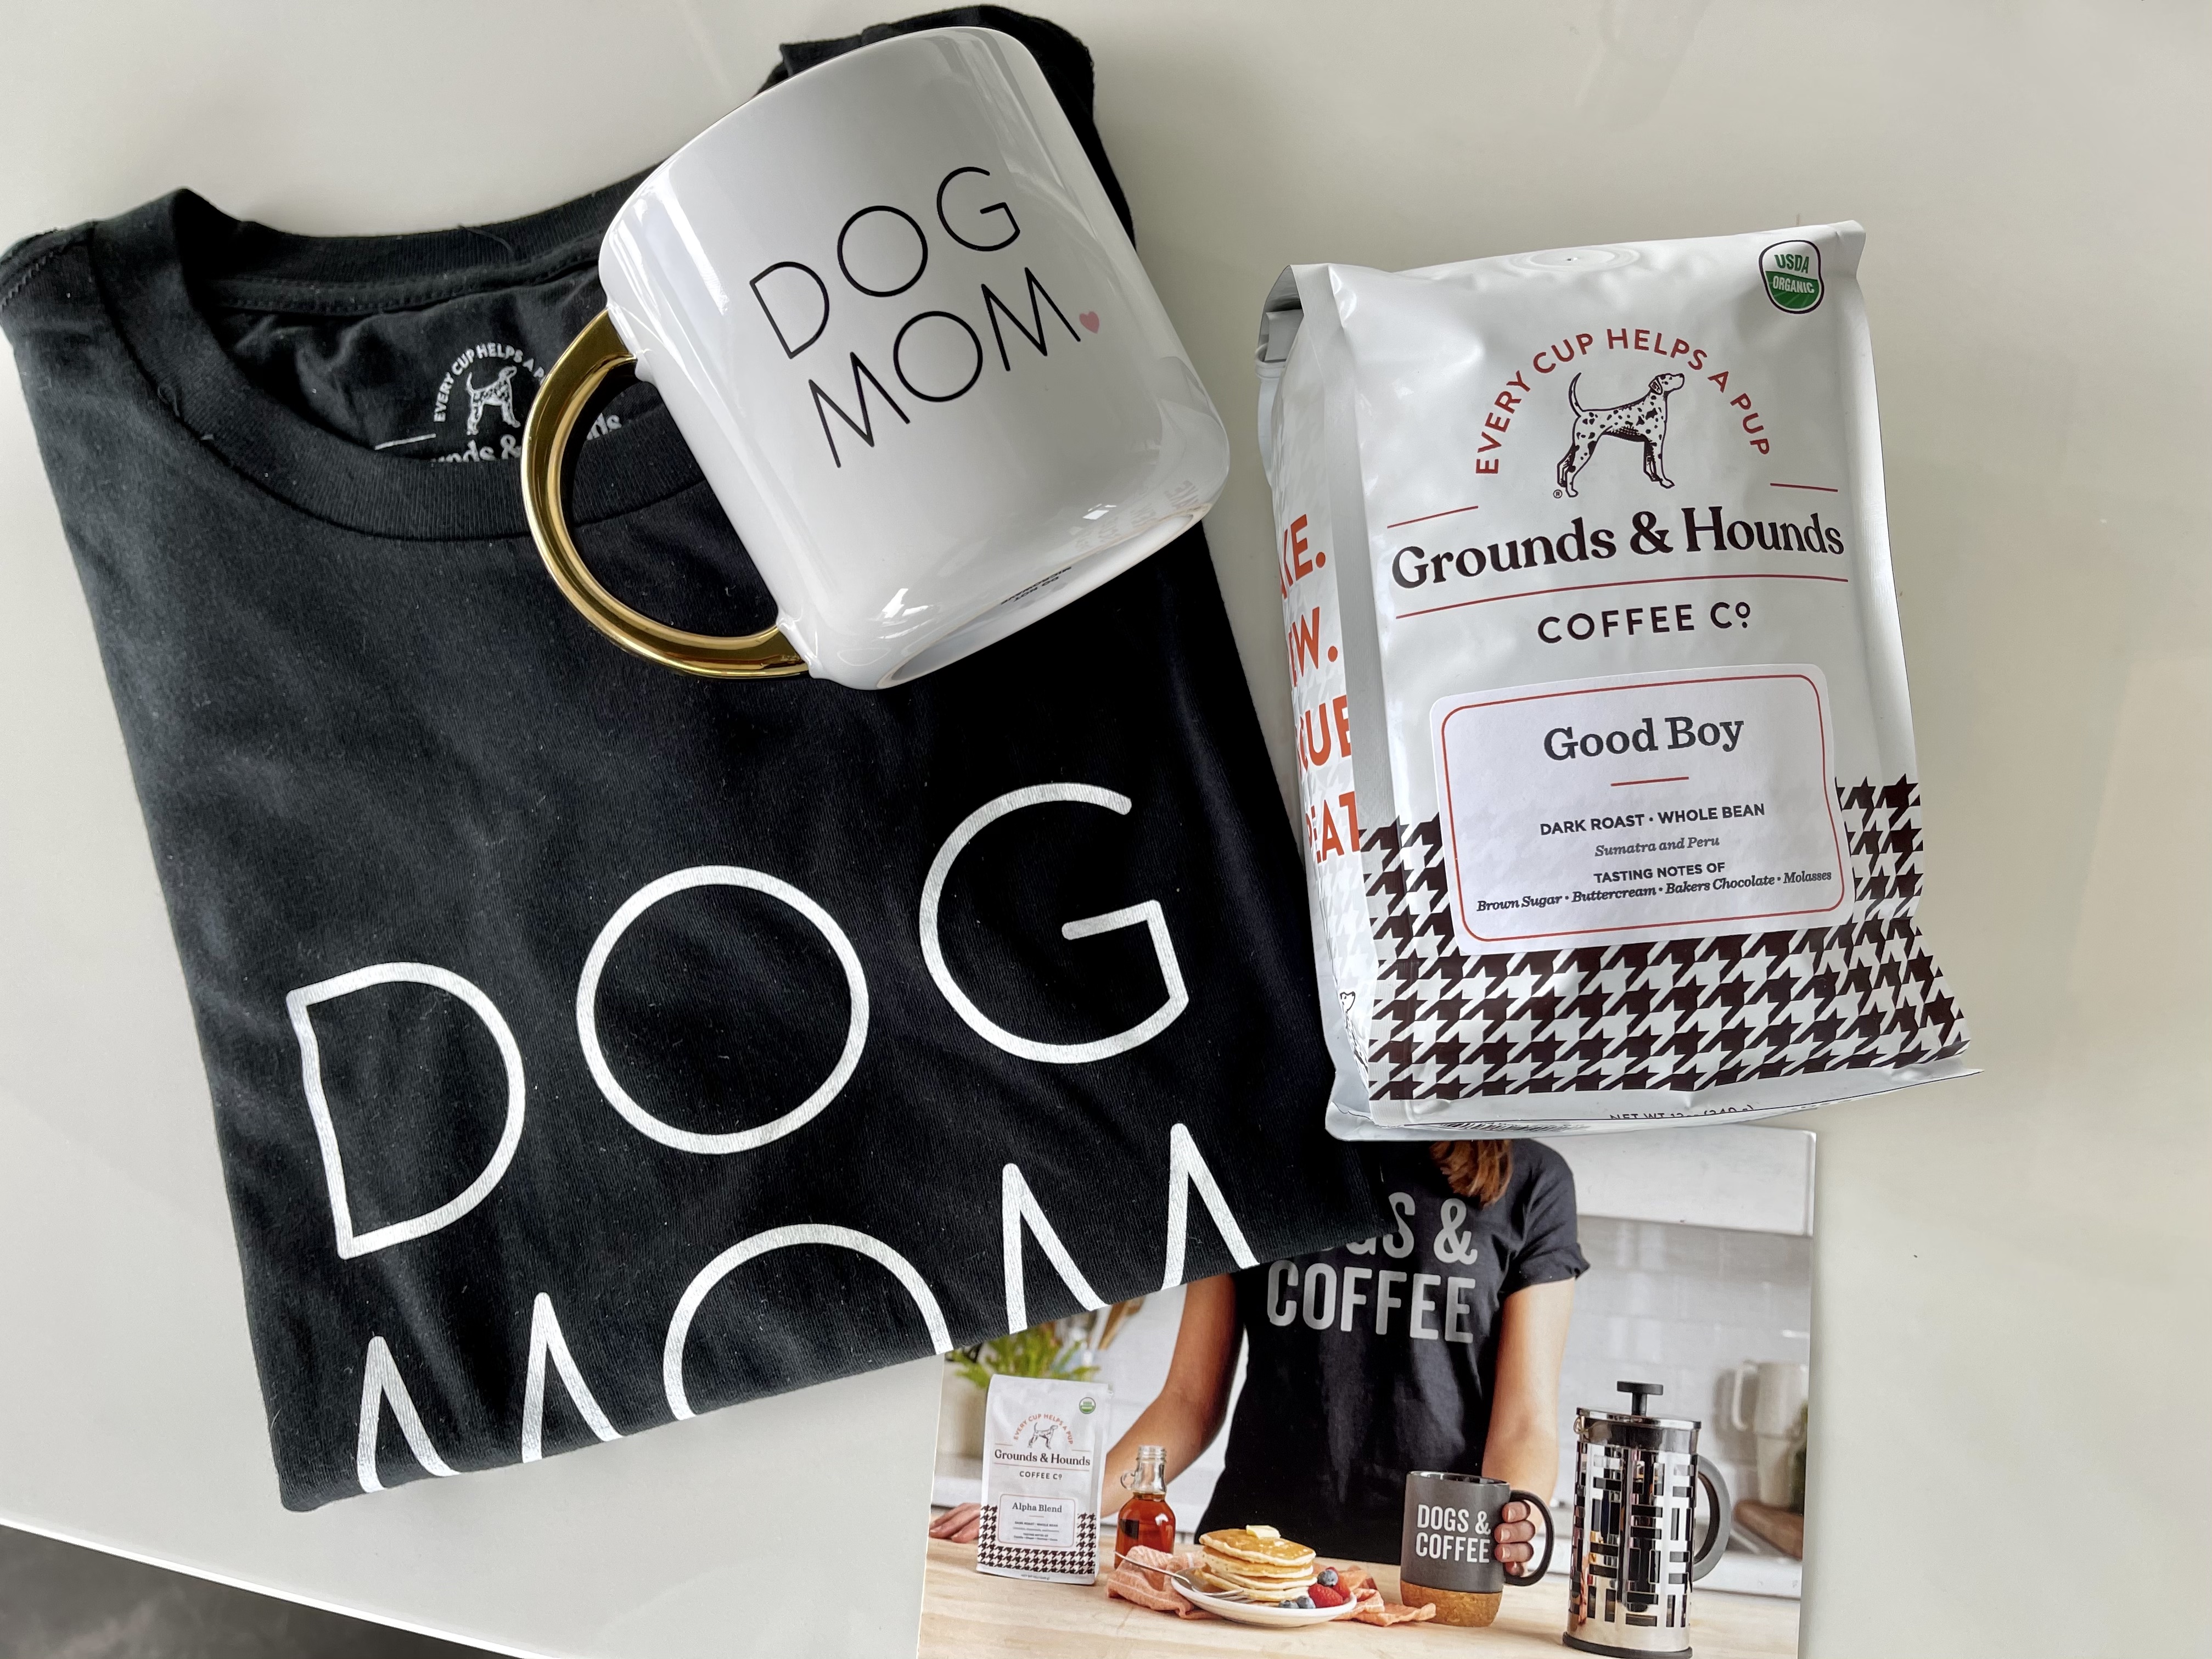 Ground and Hounds dog mom shirt, mug and Good Boy coffee